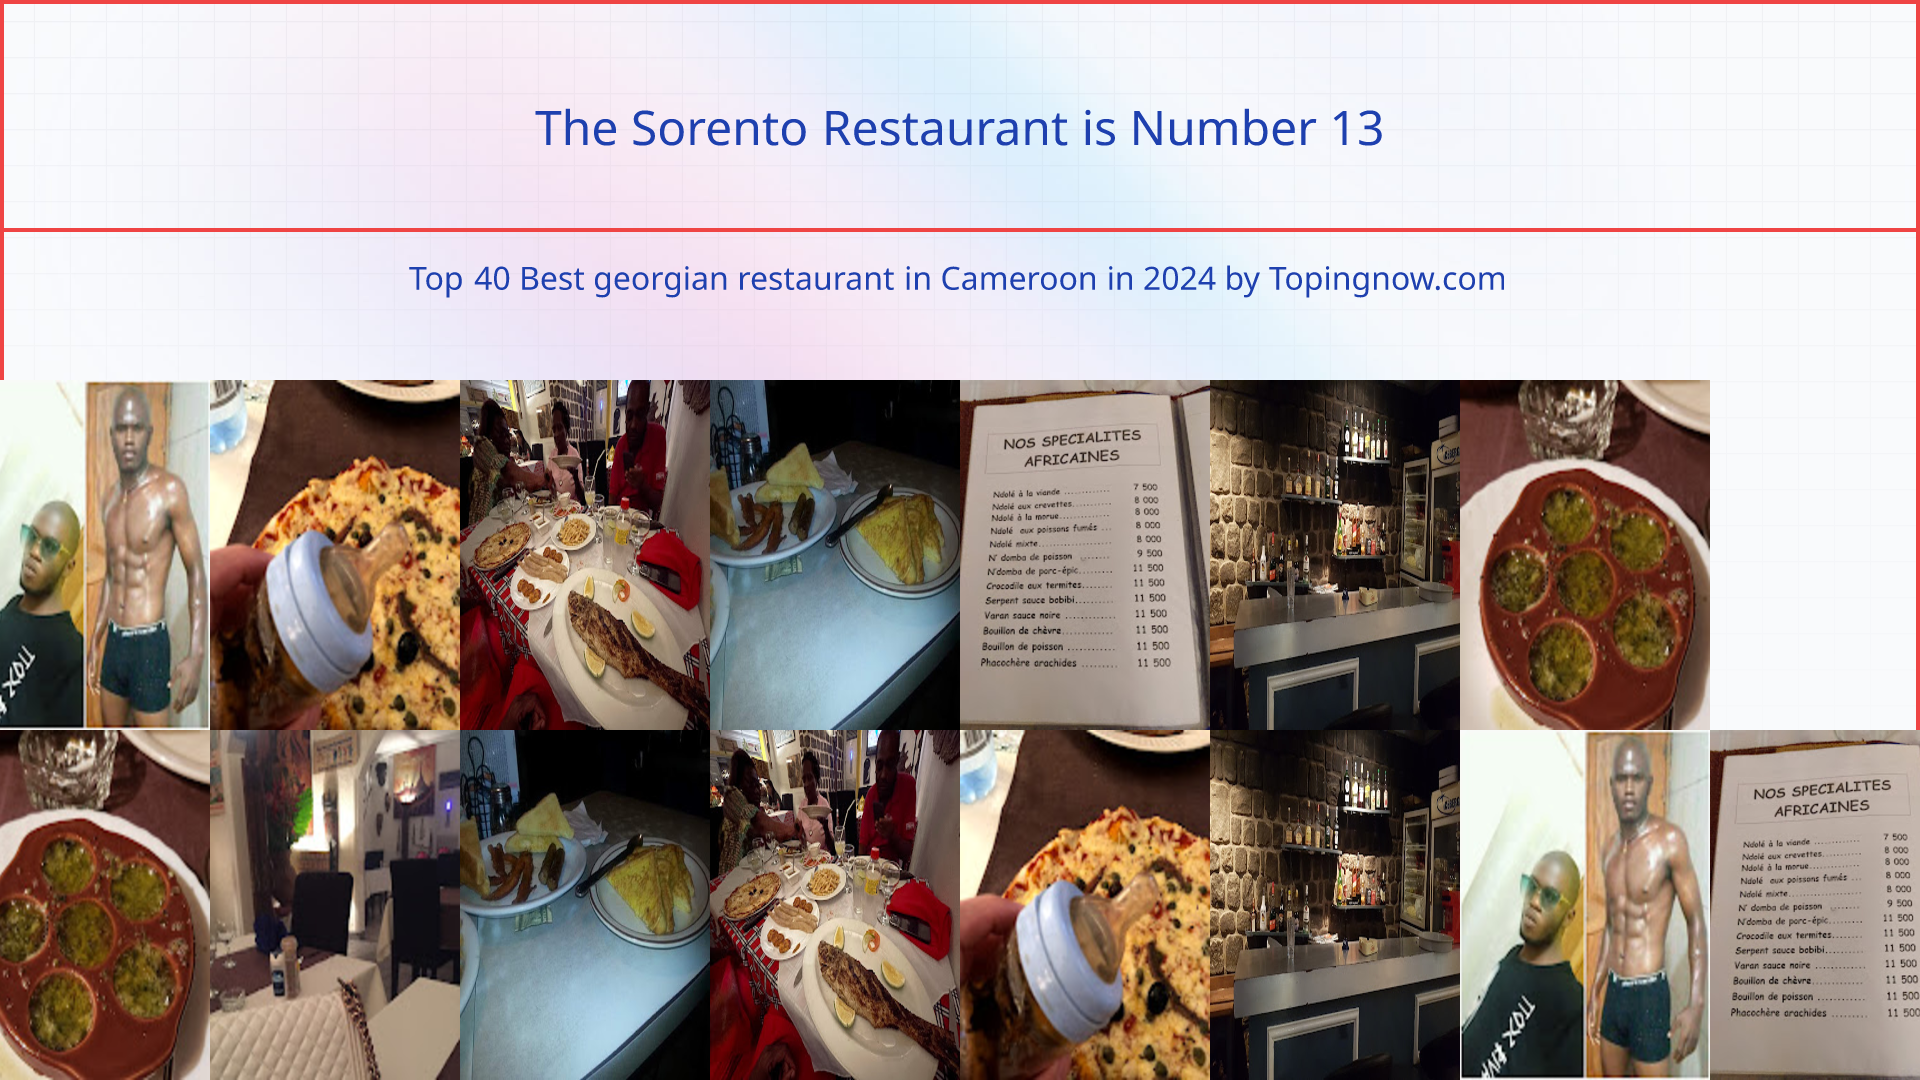 The Sorento Restaurant: Top 40 Best georgian restaurant in Cameroon in 2024